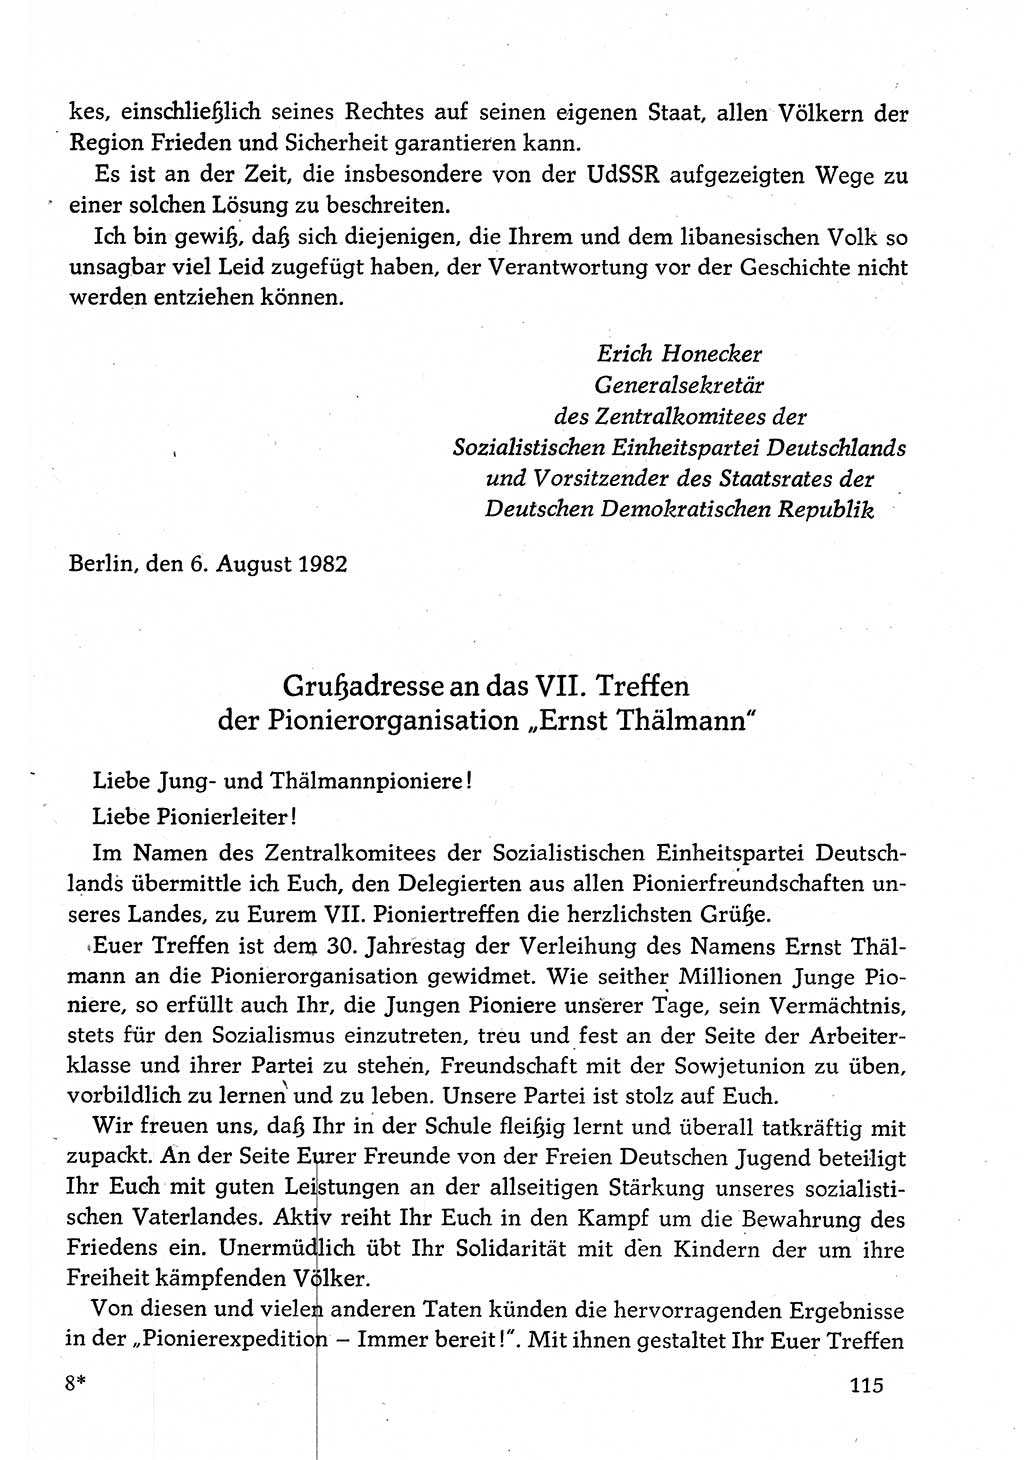 Dokumente der Sozialistischen Einheitspartei Deutschlands (SED) [Deutsche Demokratische Republik (DDR)] 1982-1983, Seite 115 (Dok. SED DDR 1982-1983, S. 115)